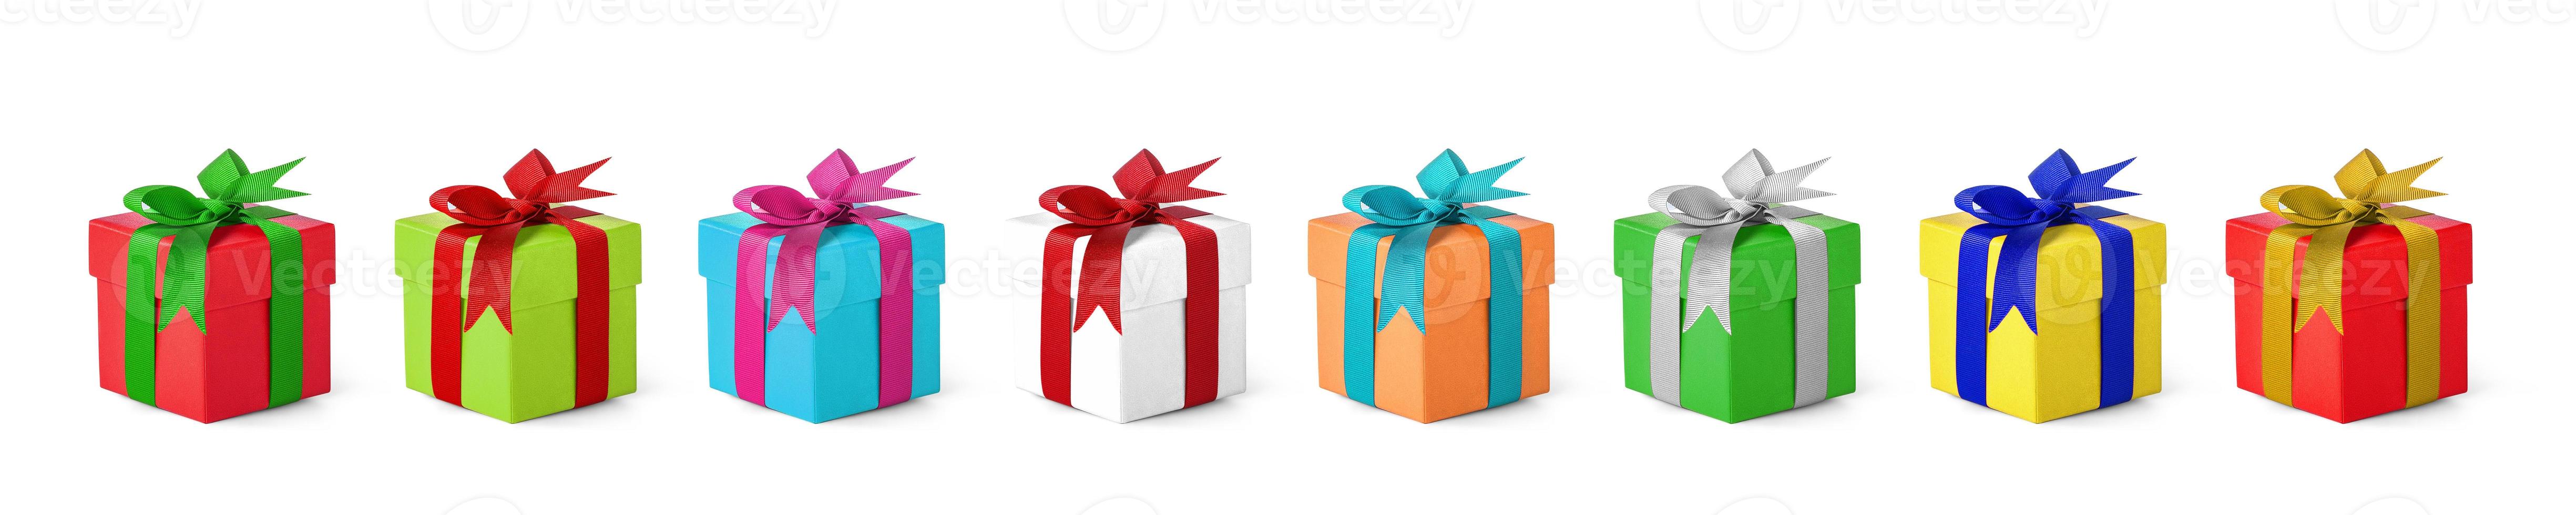 cajas de regalo de navidad y espacio de copia. fondo de navidad foto